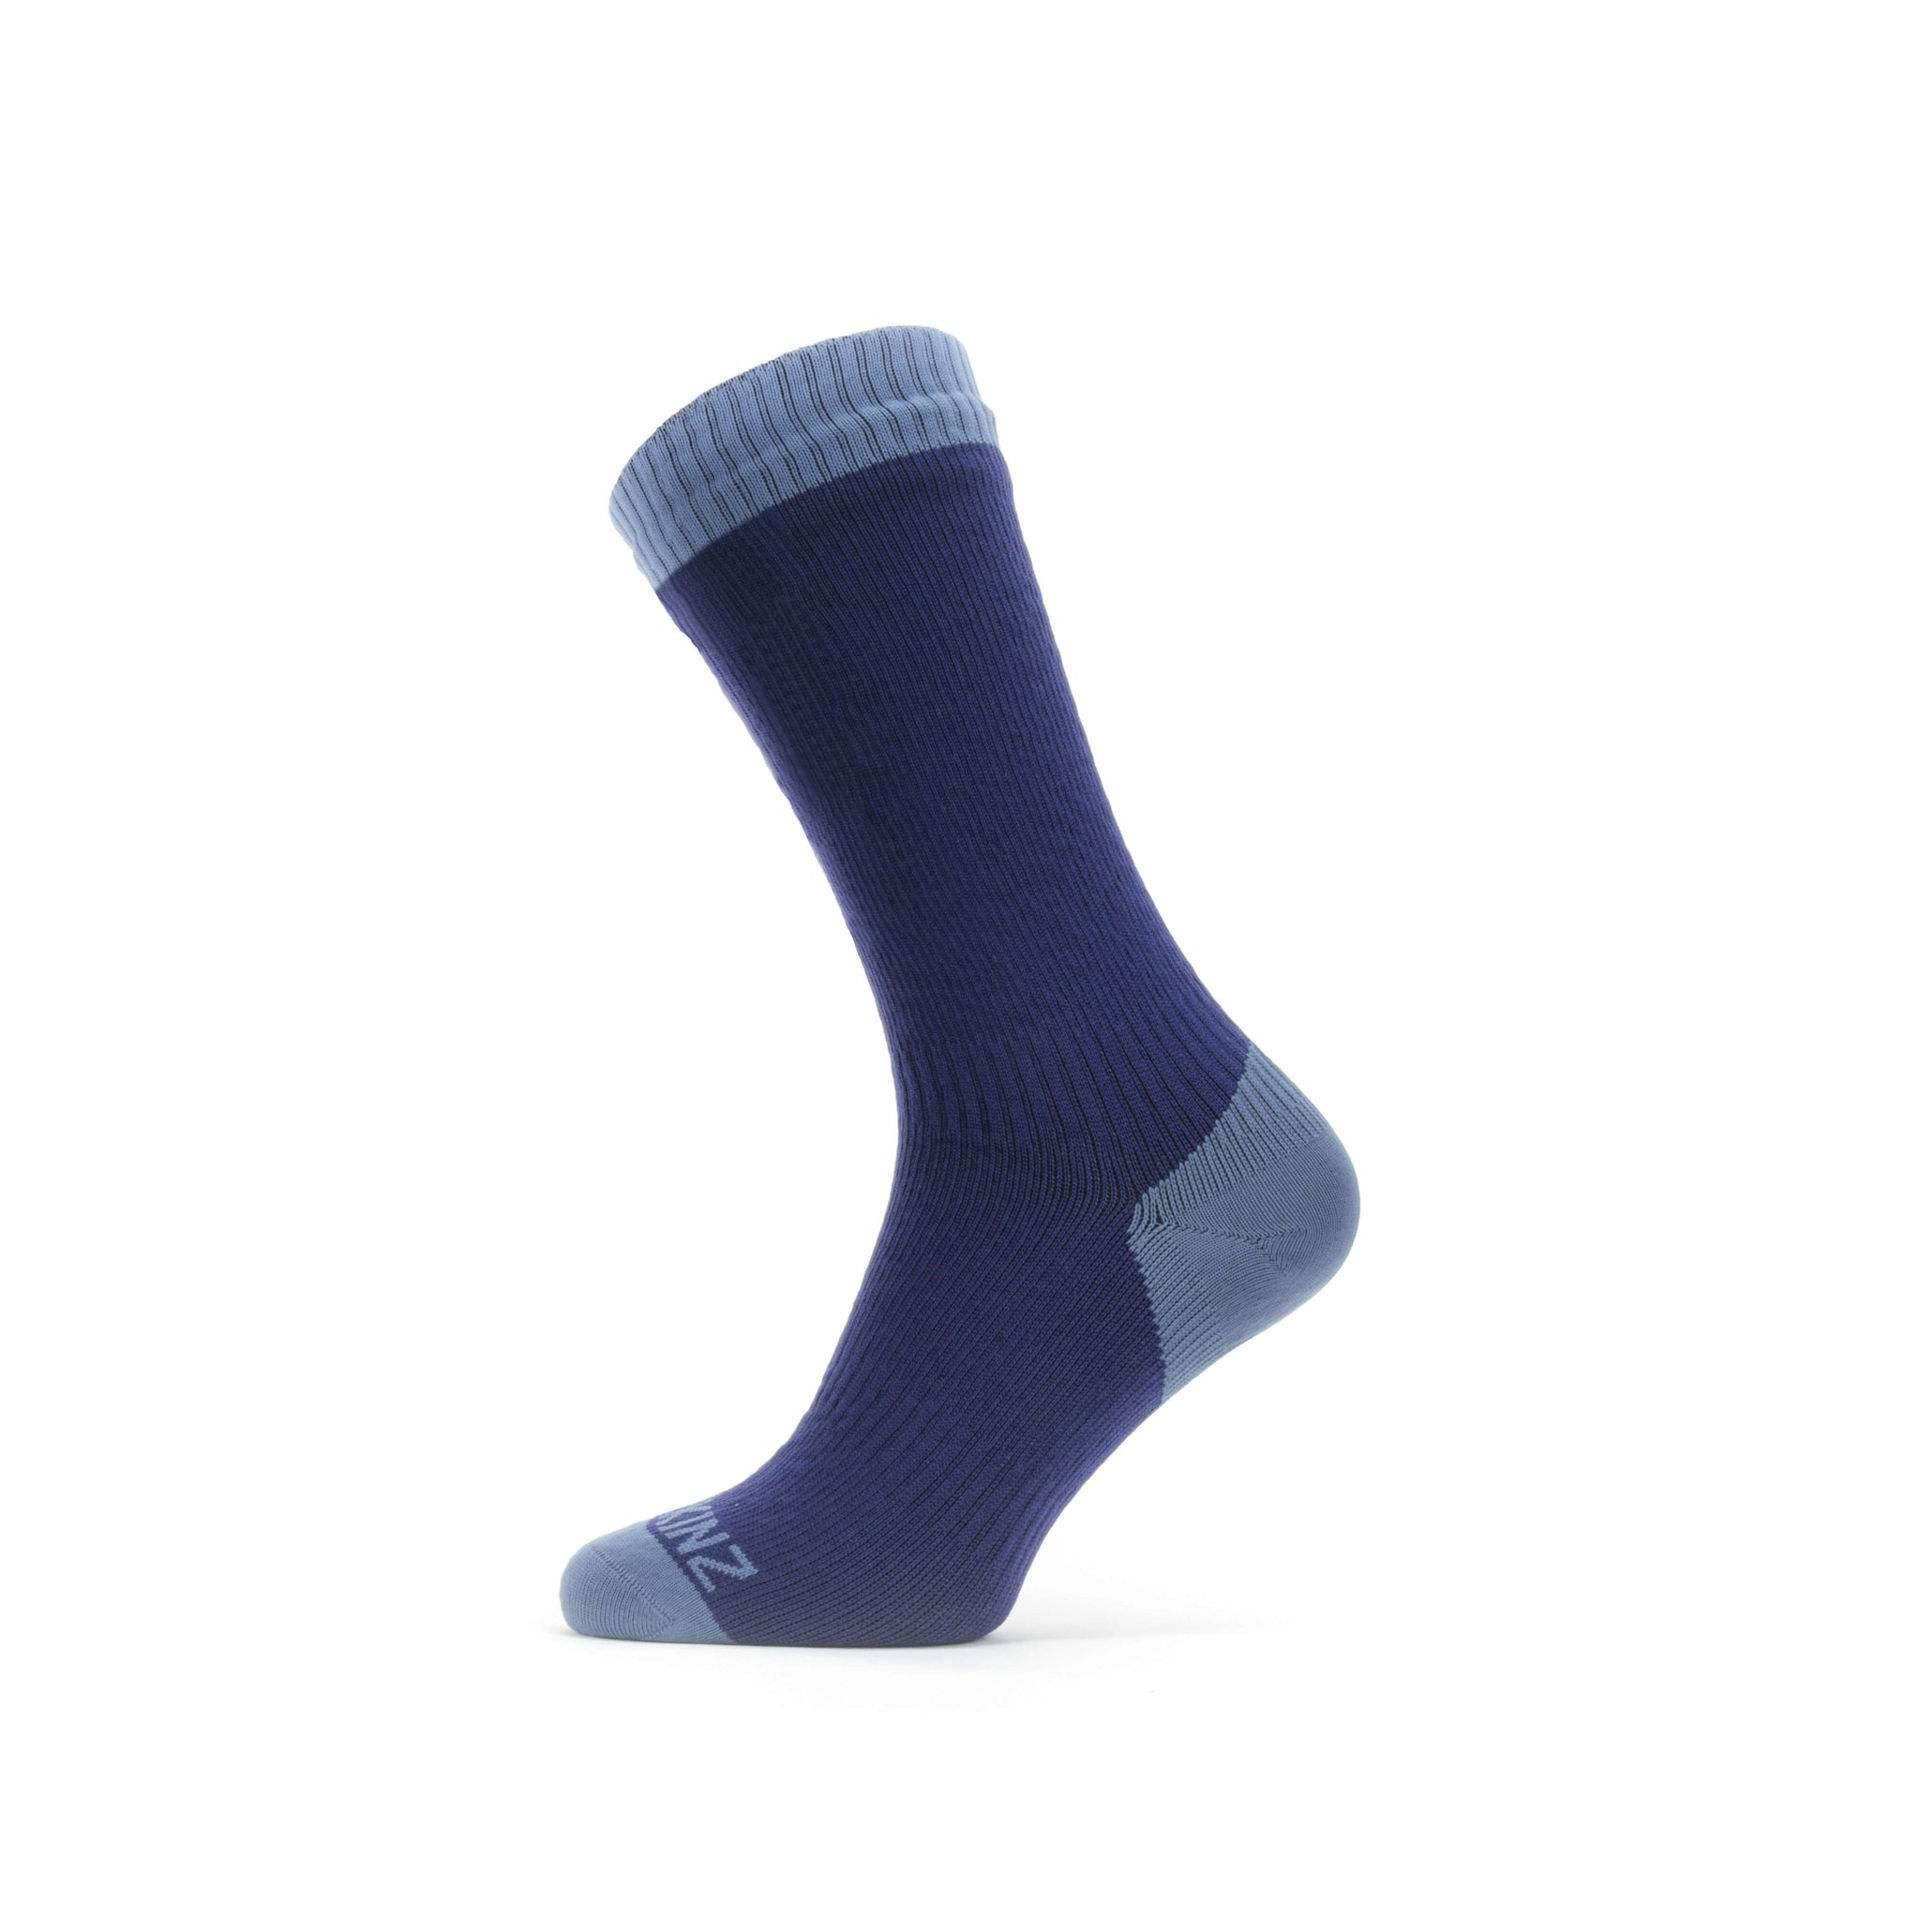 Sealskinz Waterproof Warm Weather Mid Sock in Navy Blue